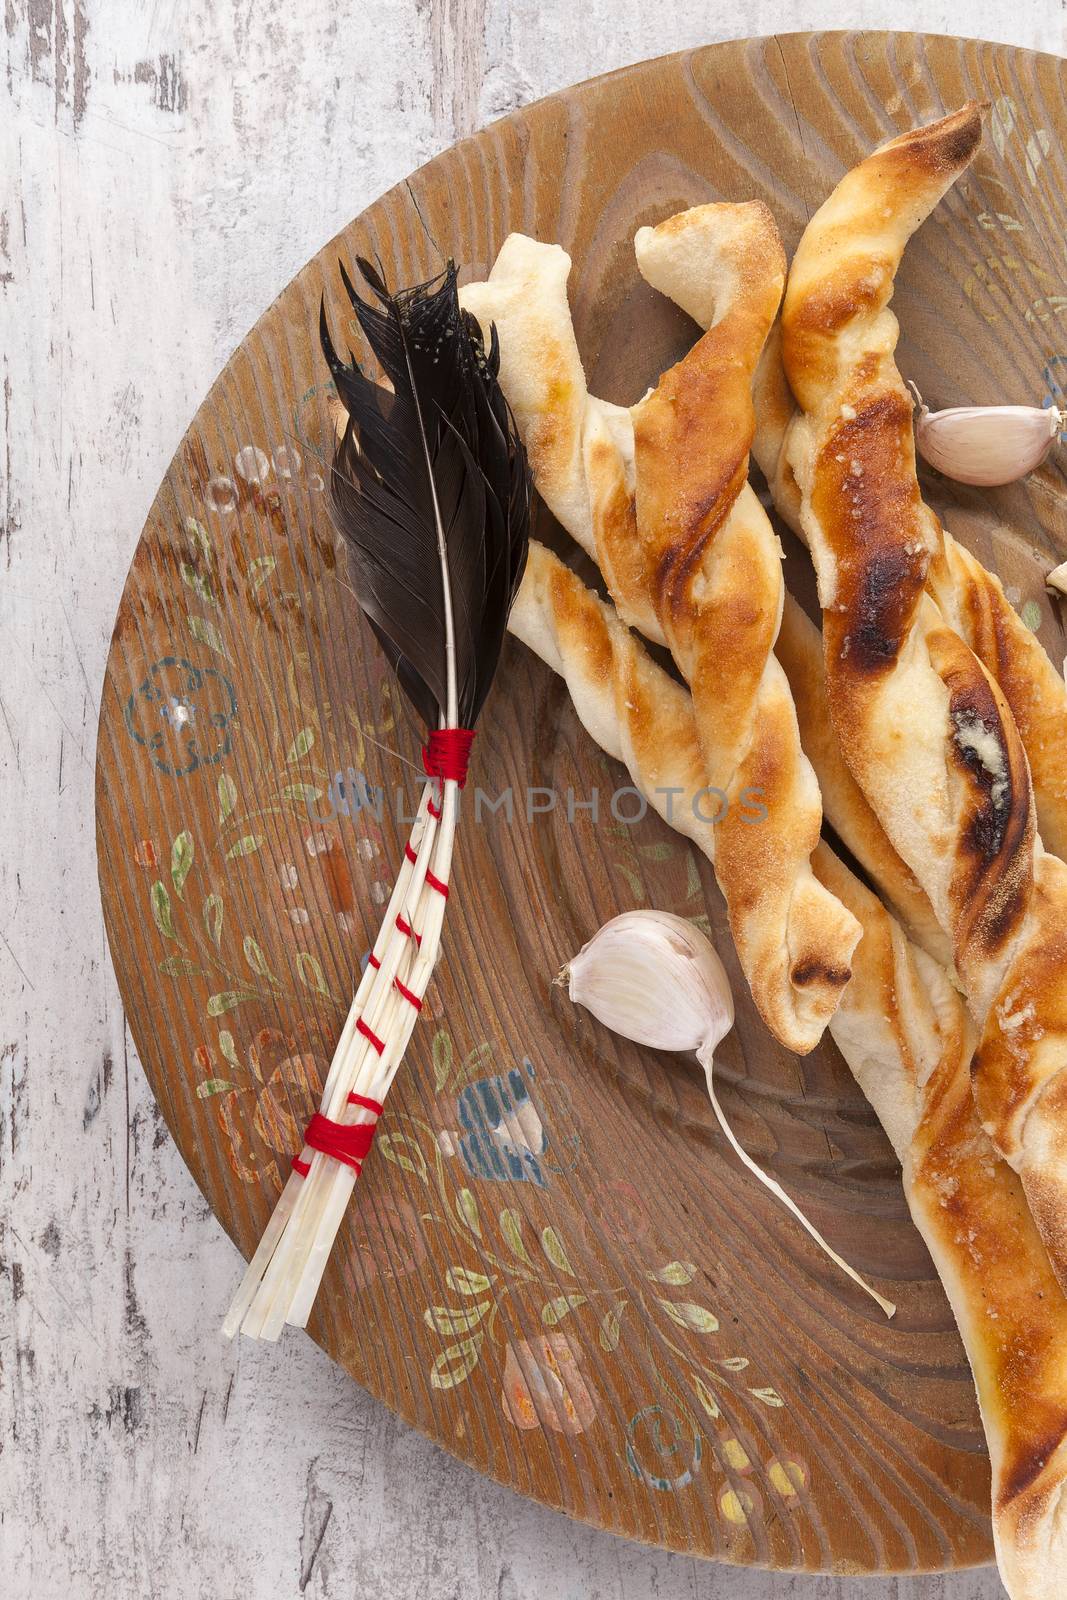 Pizza breadsticks. by eskymaks